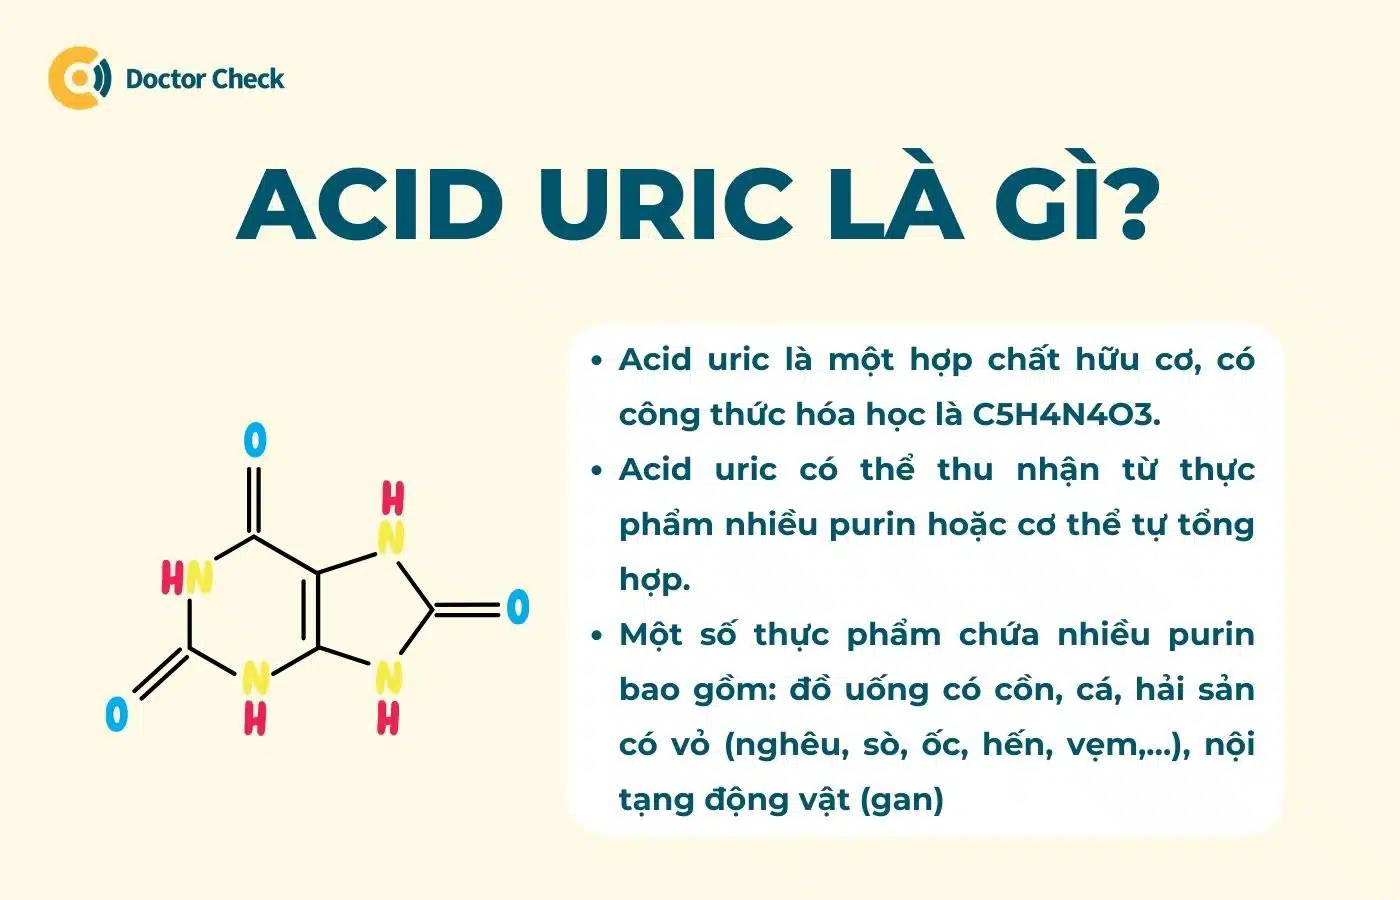 Acid uric là gì?